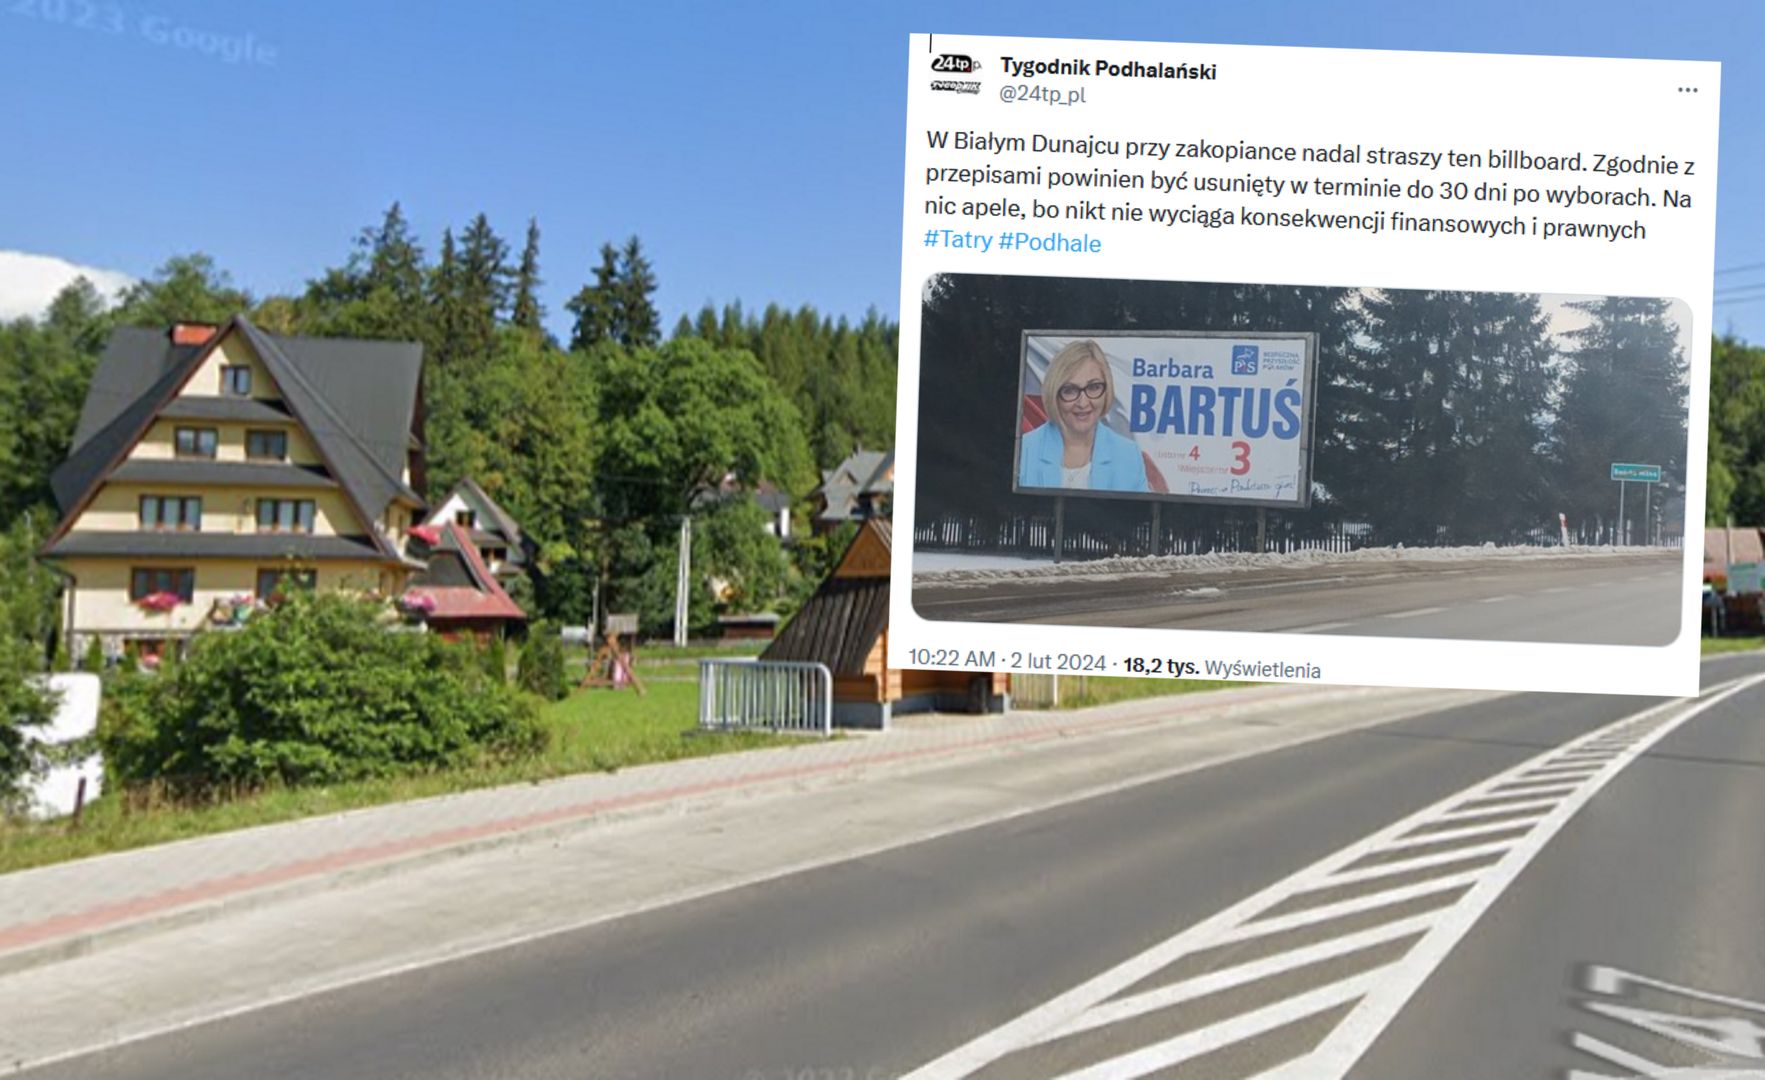 Billboardy wyborcze wciąż "straszą" na ulicach. Zdjęcie z Podhala